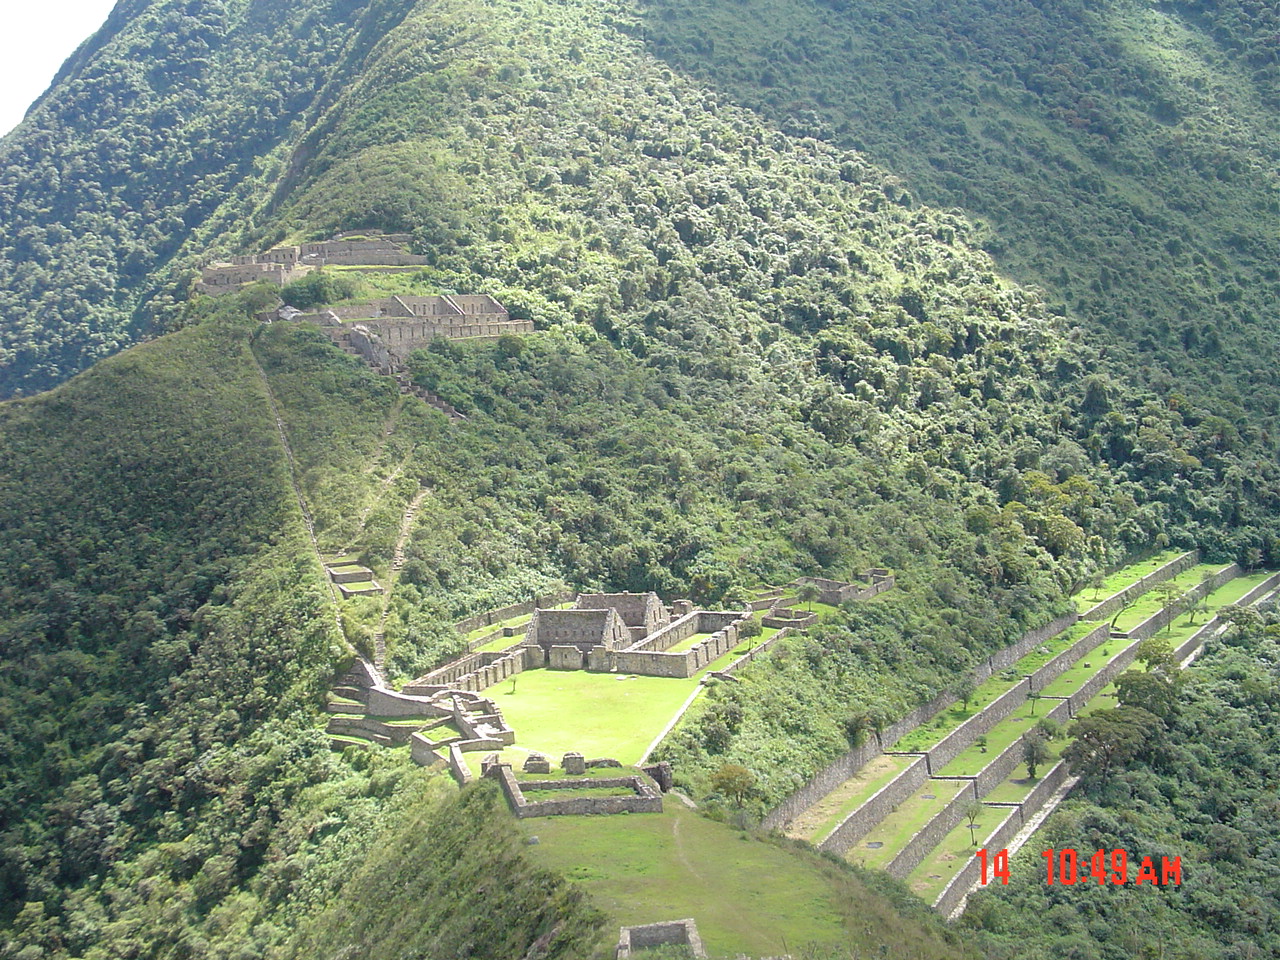 Caminos Incas